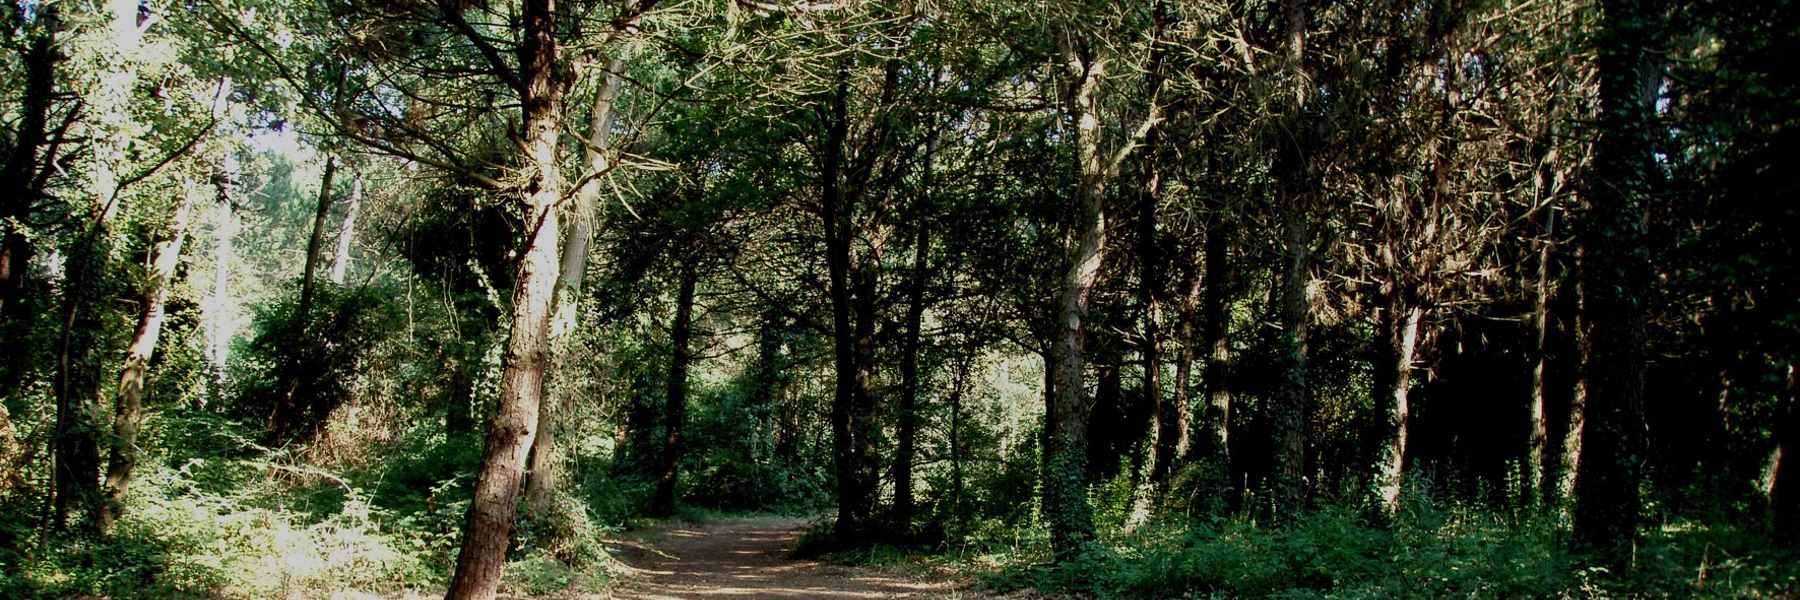 3-Une promenade dans la forêt de pins